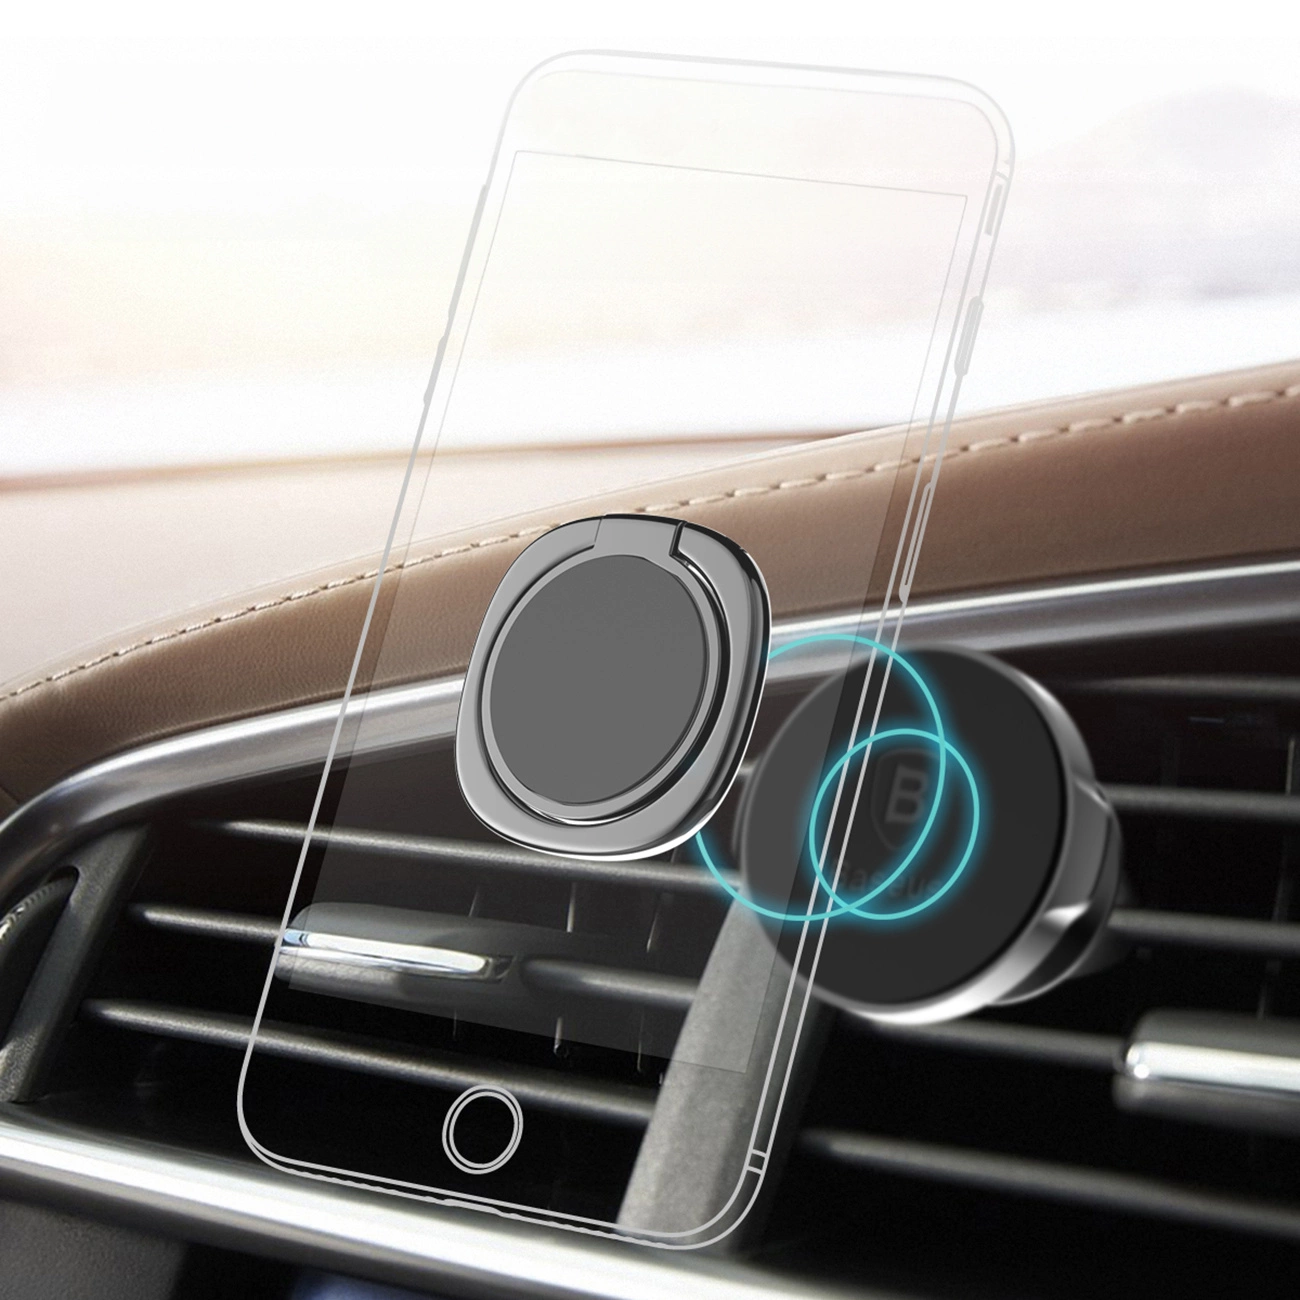 Wizualizacja mocowania czarnego uchwytu Baseus Privity Ring do uchwytu telefonu w kratce wentylacyjnej samochodu